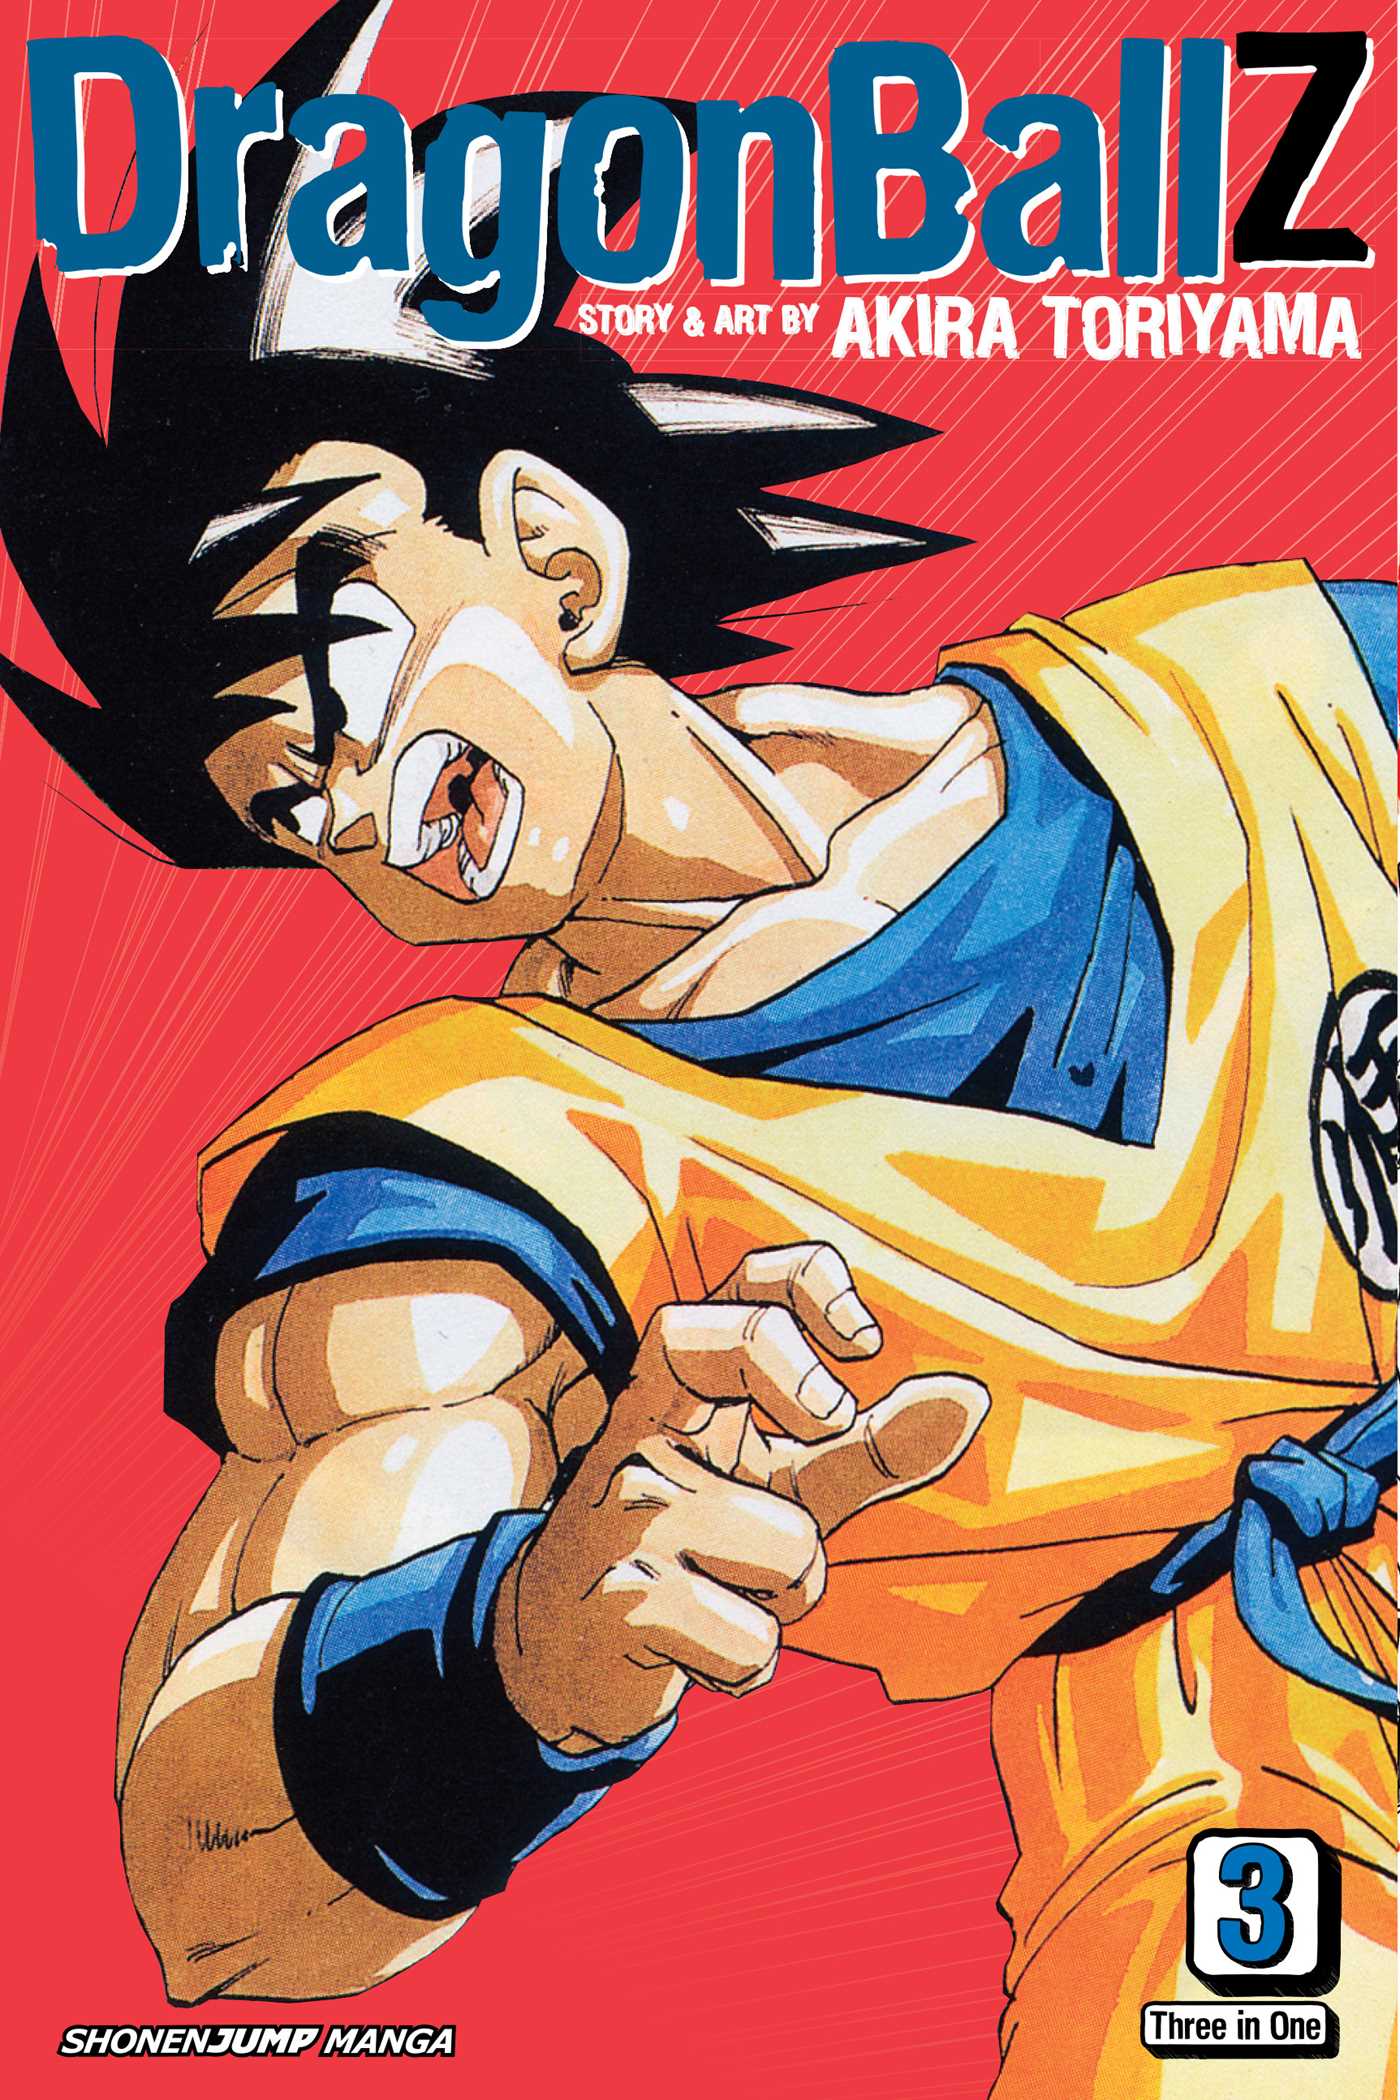 Dragon Ball Z Vizbig Edition Manga Volume 3